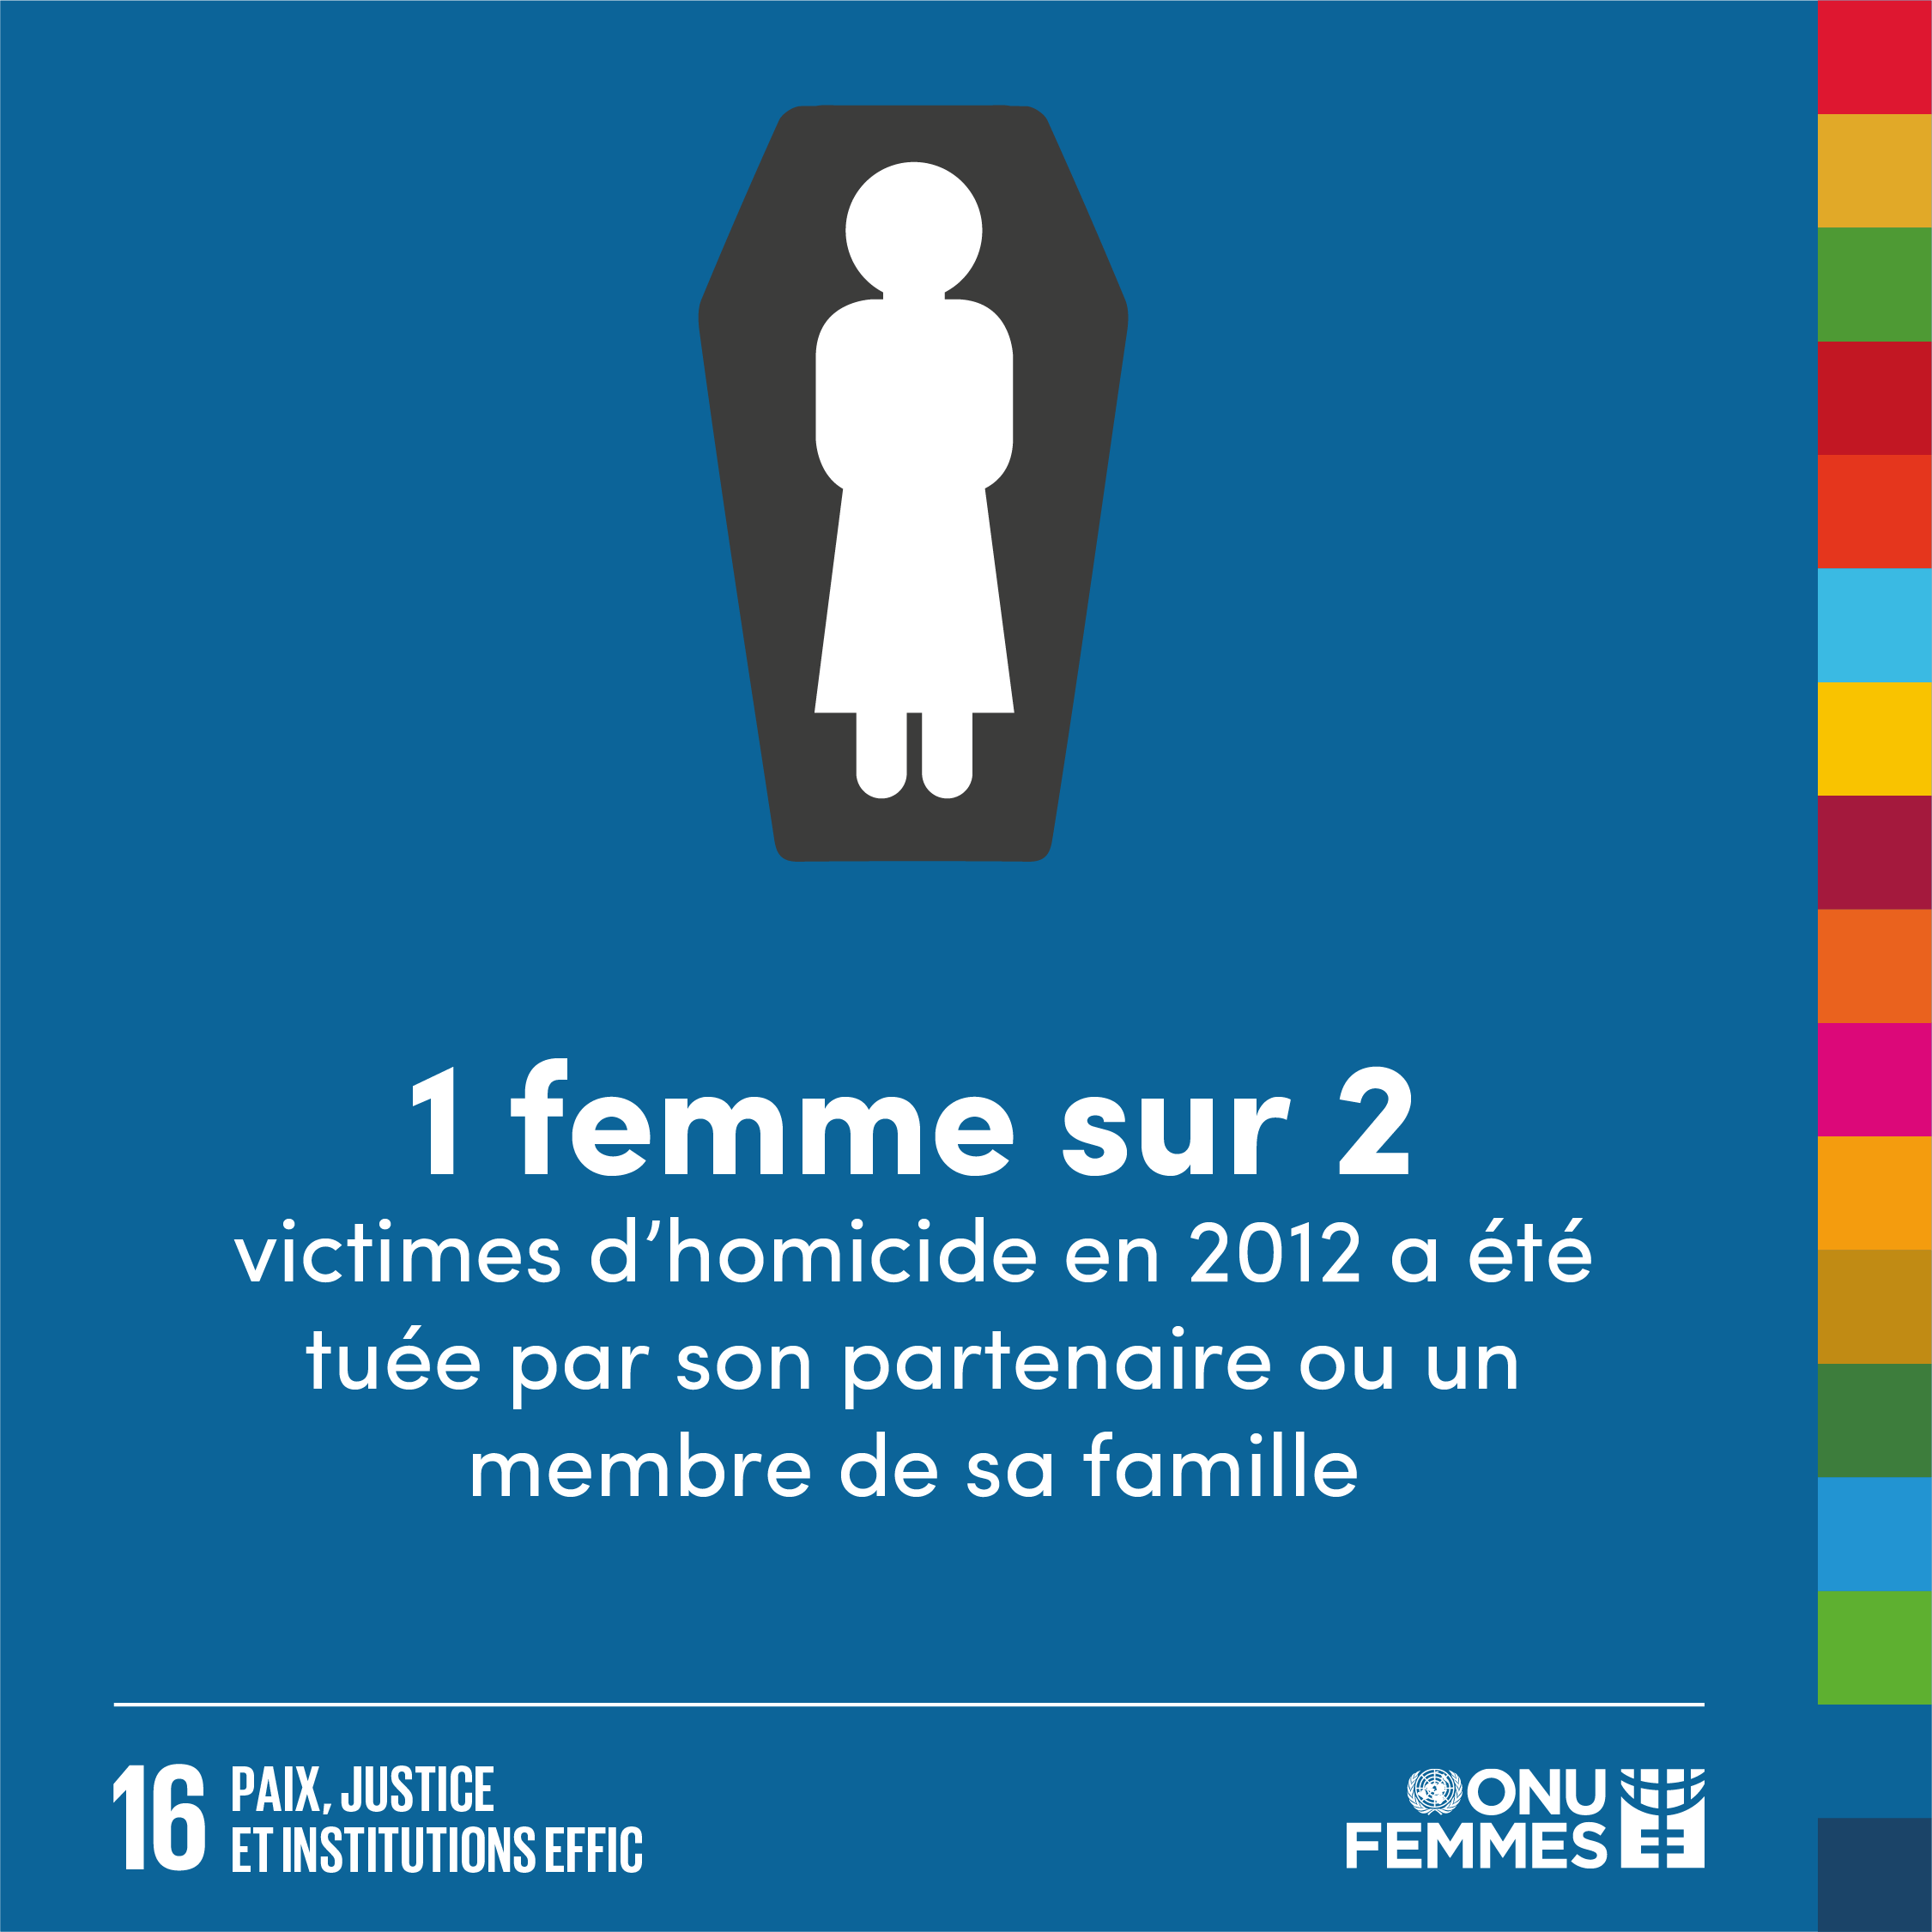 1 femme sur 2 victimes d'homicide en 2012 a dire tuee par son partenaire ou un membre de sa famille